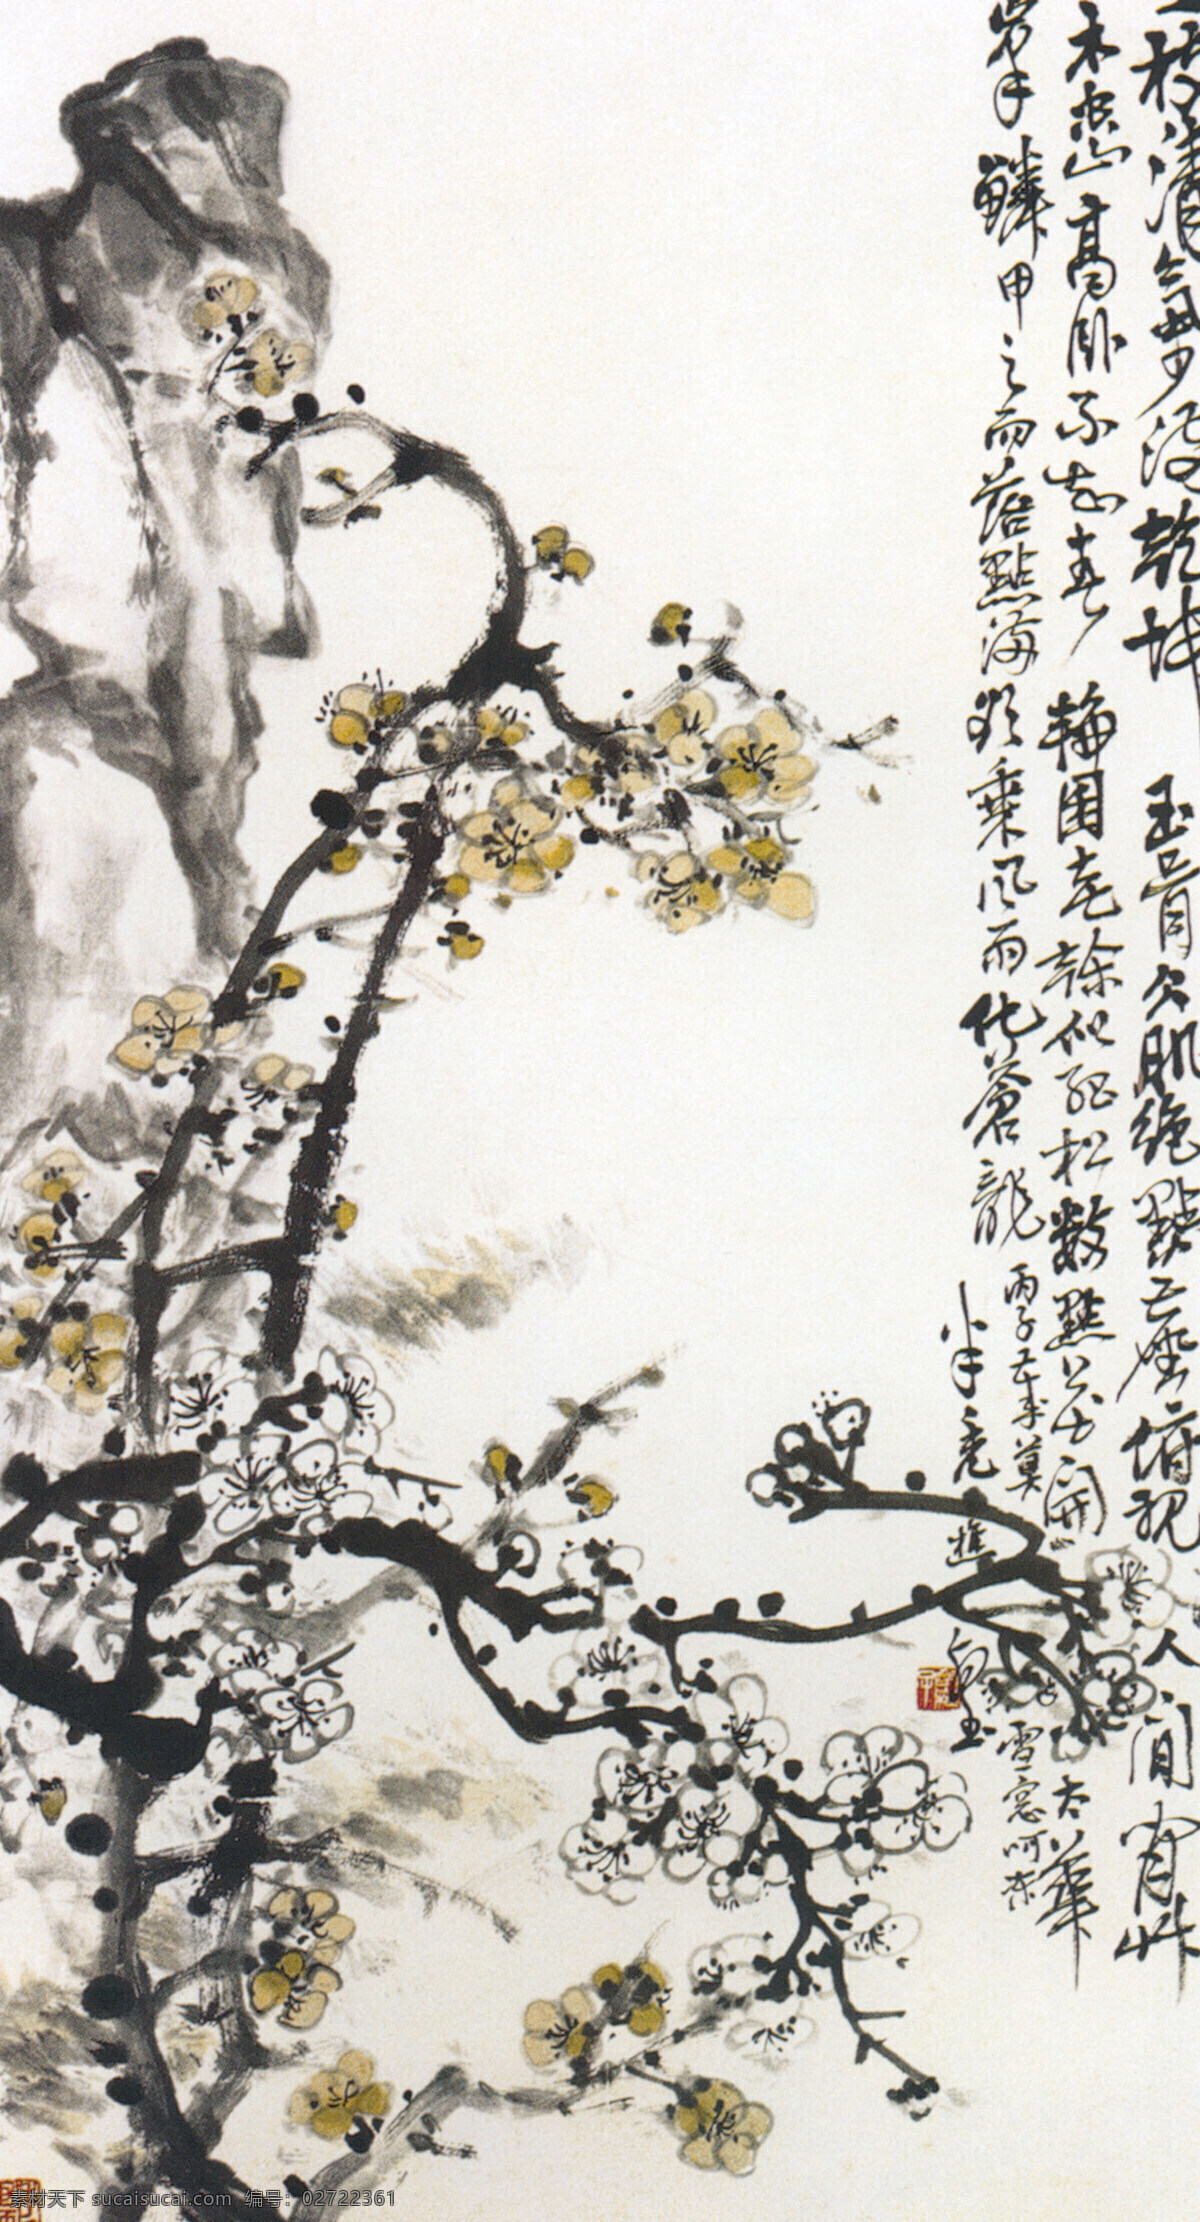 梅花 图 绘画 水墨 丹青 假山 中国国画篇 文化艺术 绘画书法